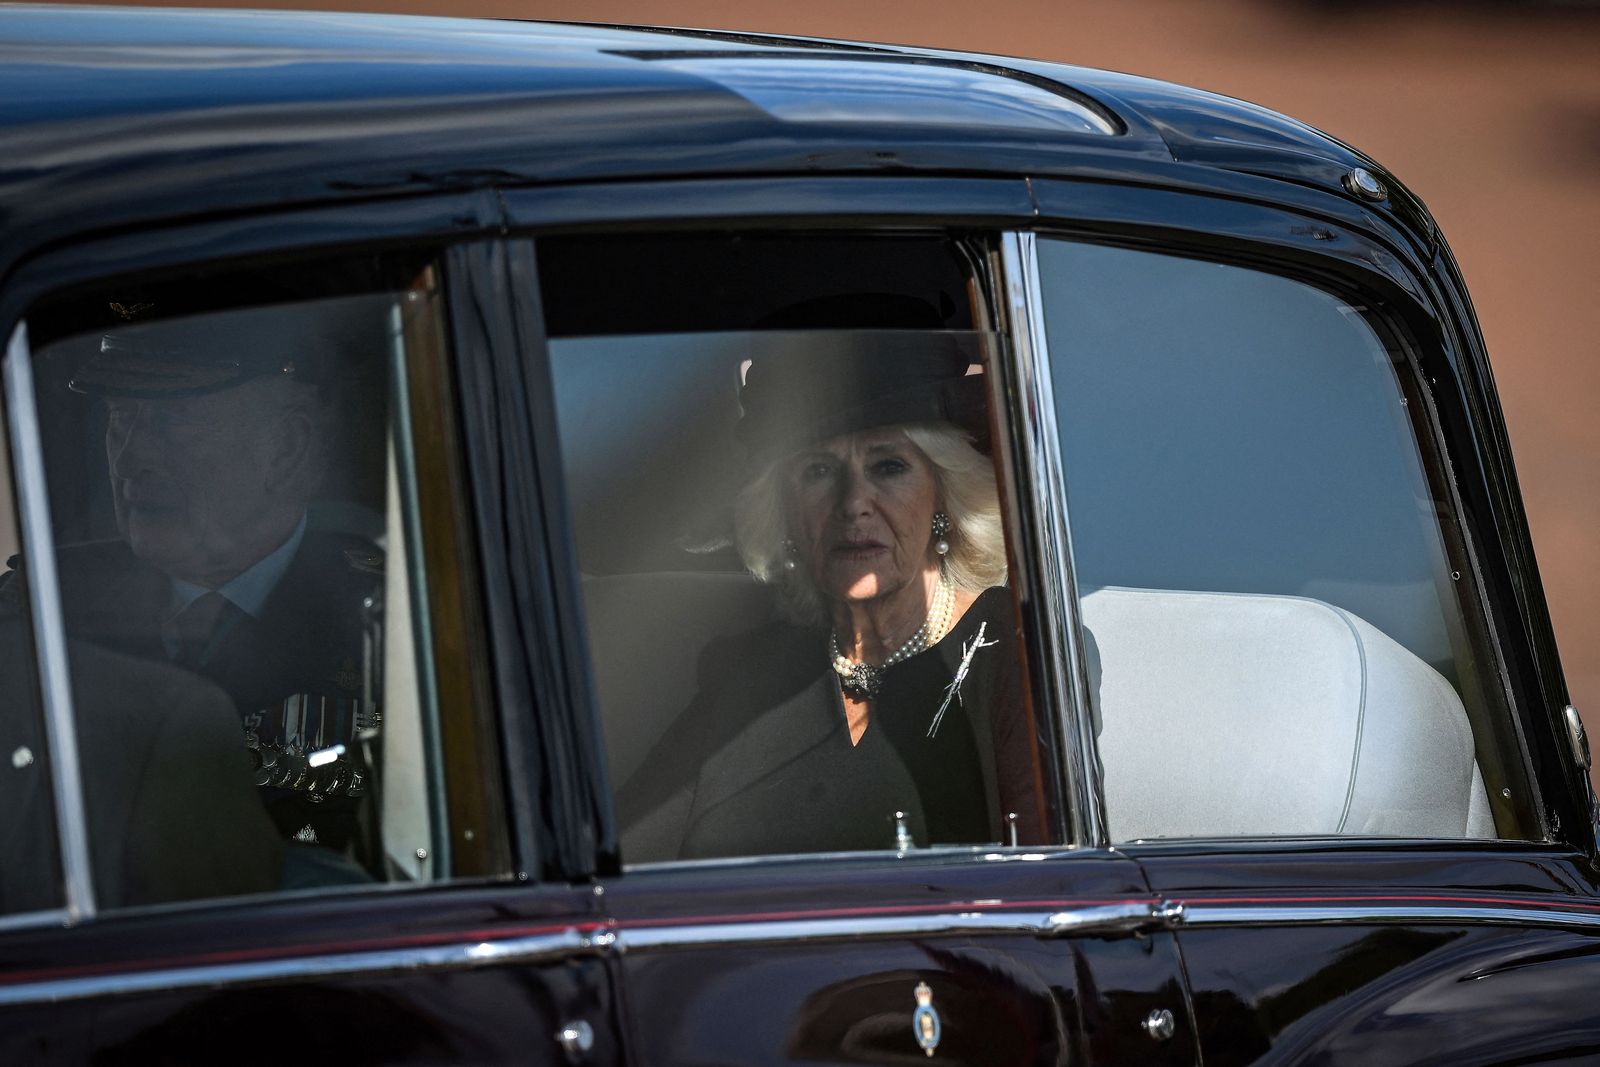 ملك بريطانيا تشارلز الثالث وقرينته الملكة كاميلا يعودان بالسيارة إلى قصر باكنجهام بعد حضور قداس لاستقبال نعش الملكة إليزابيث الثانية في قاعة وستمنستر بلندن- 14 سبتمبر 2022  - AFP